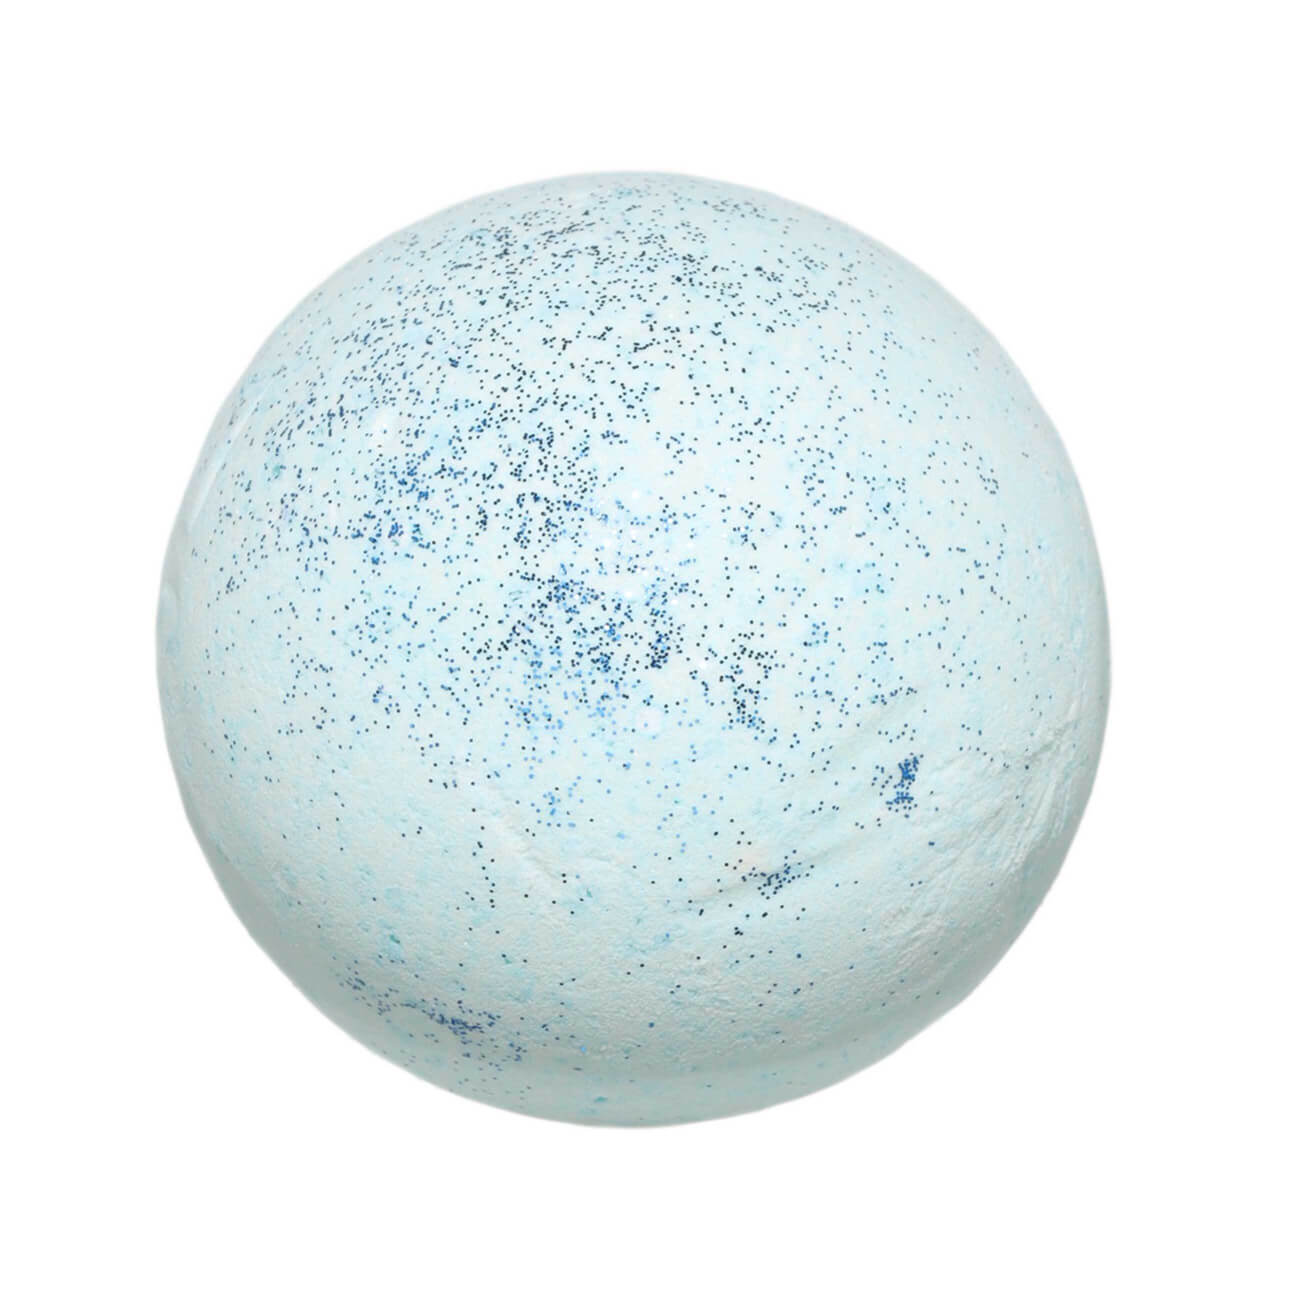 Бомбочка для ванны, 130 гр, с блестками, Ягодный аромат, голубая, Шар, Sparkle body бурлящий шар для ванны ягодный лед 120 г